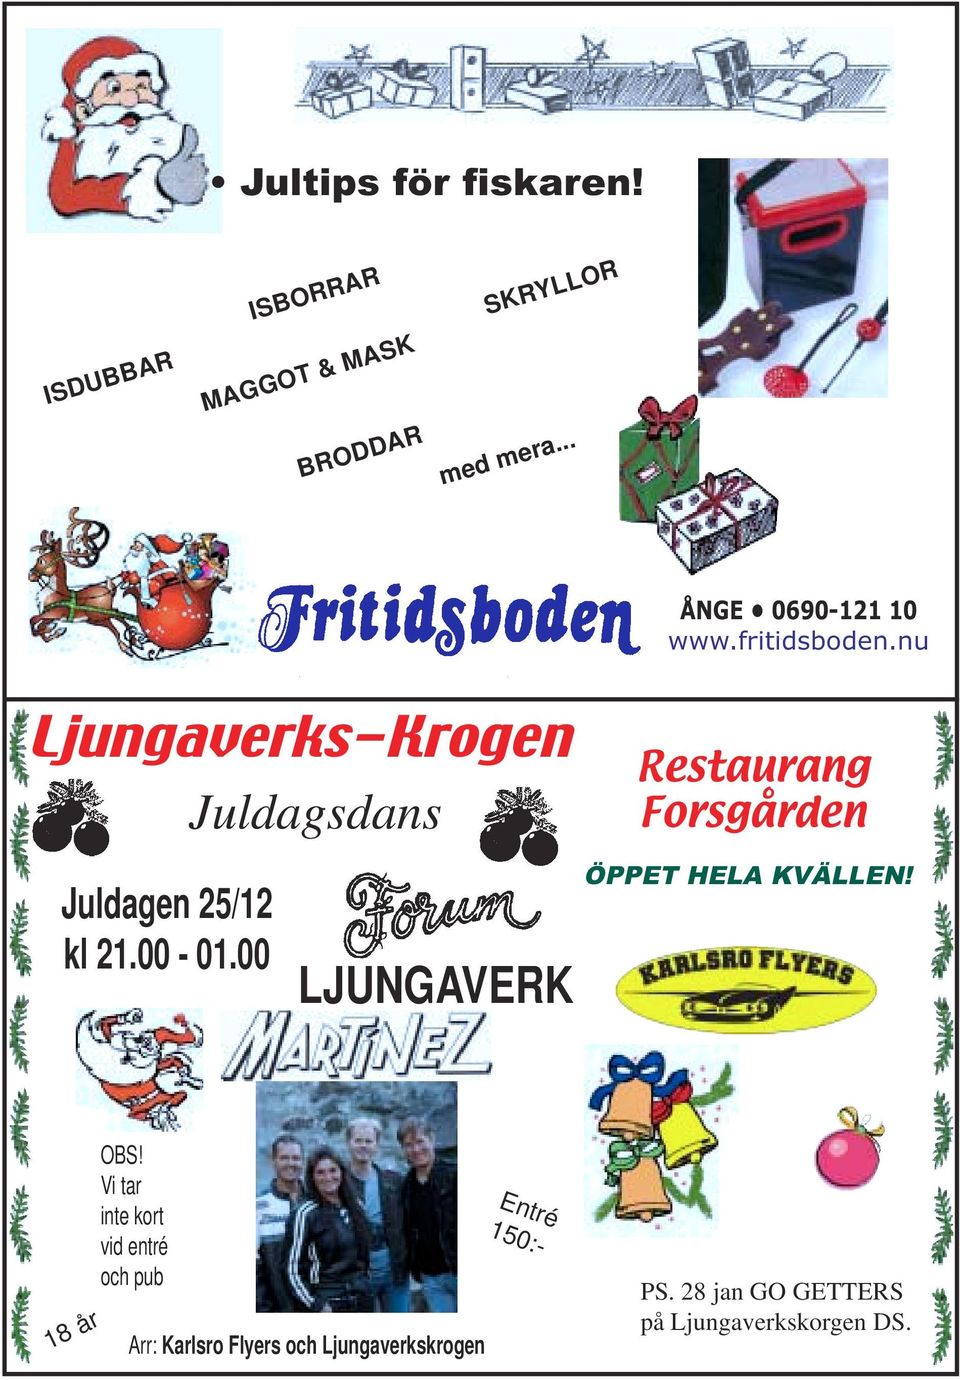 nu Ljungaverks-Krogen Juldagsdans Juldagen 25/12 kl 21.00-01.